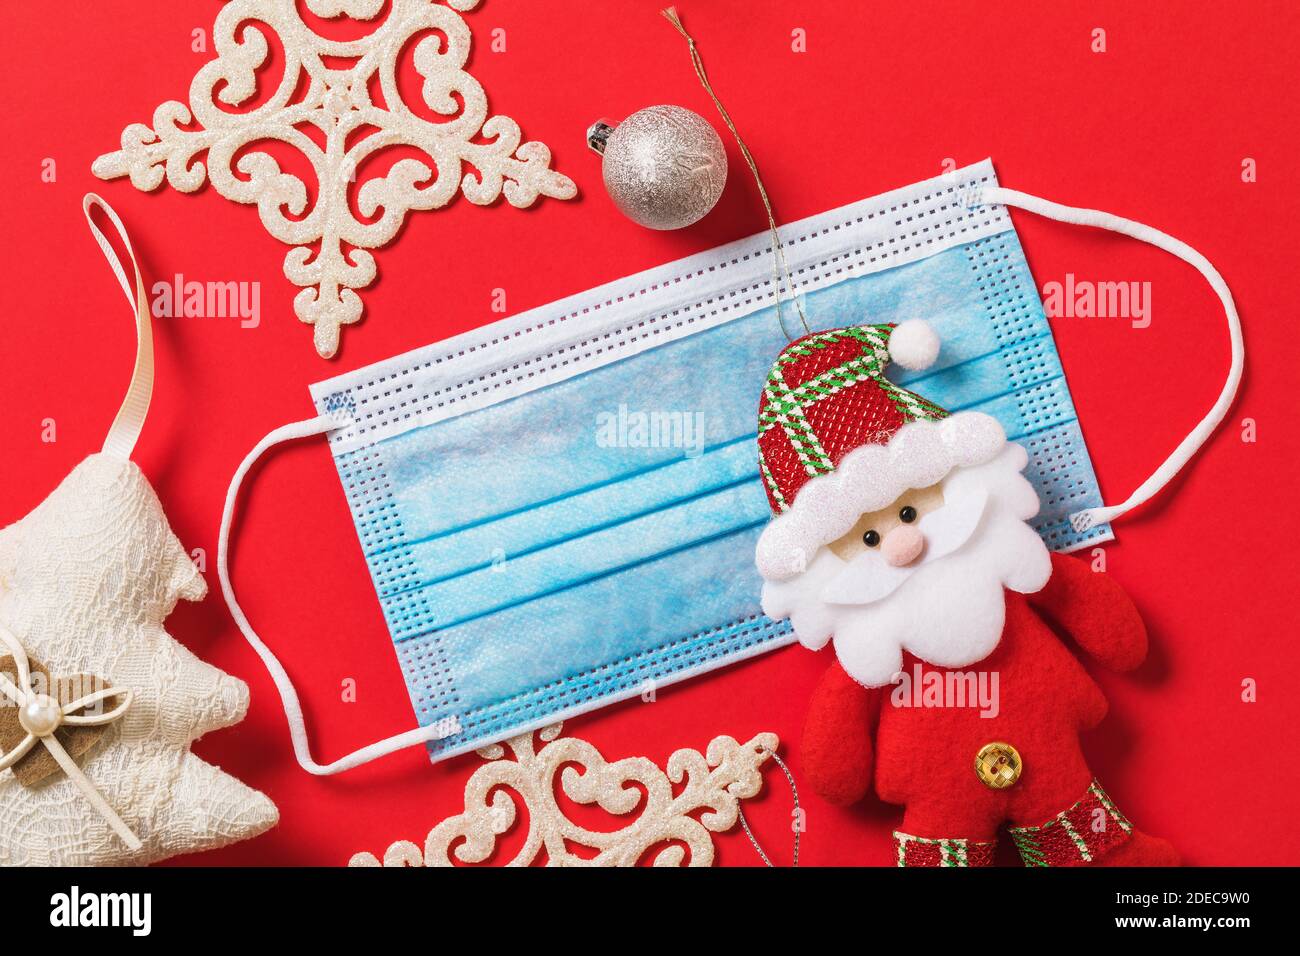 Weihnachtsschmuck und eine medizinische Maske auf rotem Hintergrund, Draufsicht. Urlaub Quarantänekonzept aufgrund covid-19 Pandemie. Stockfoto